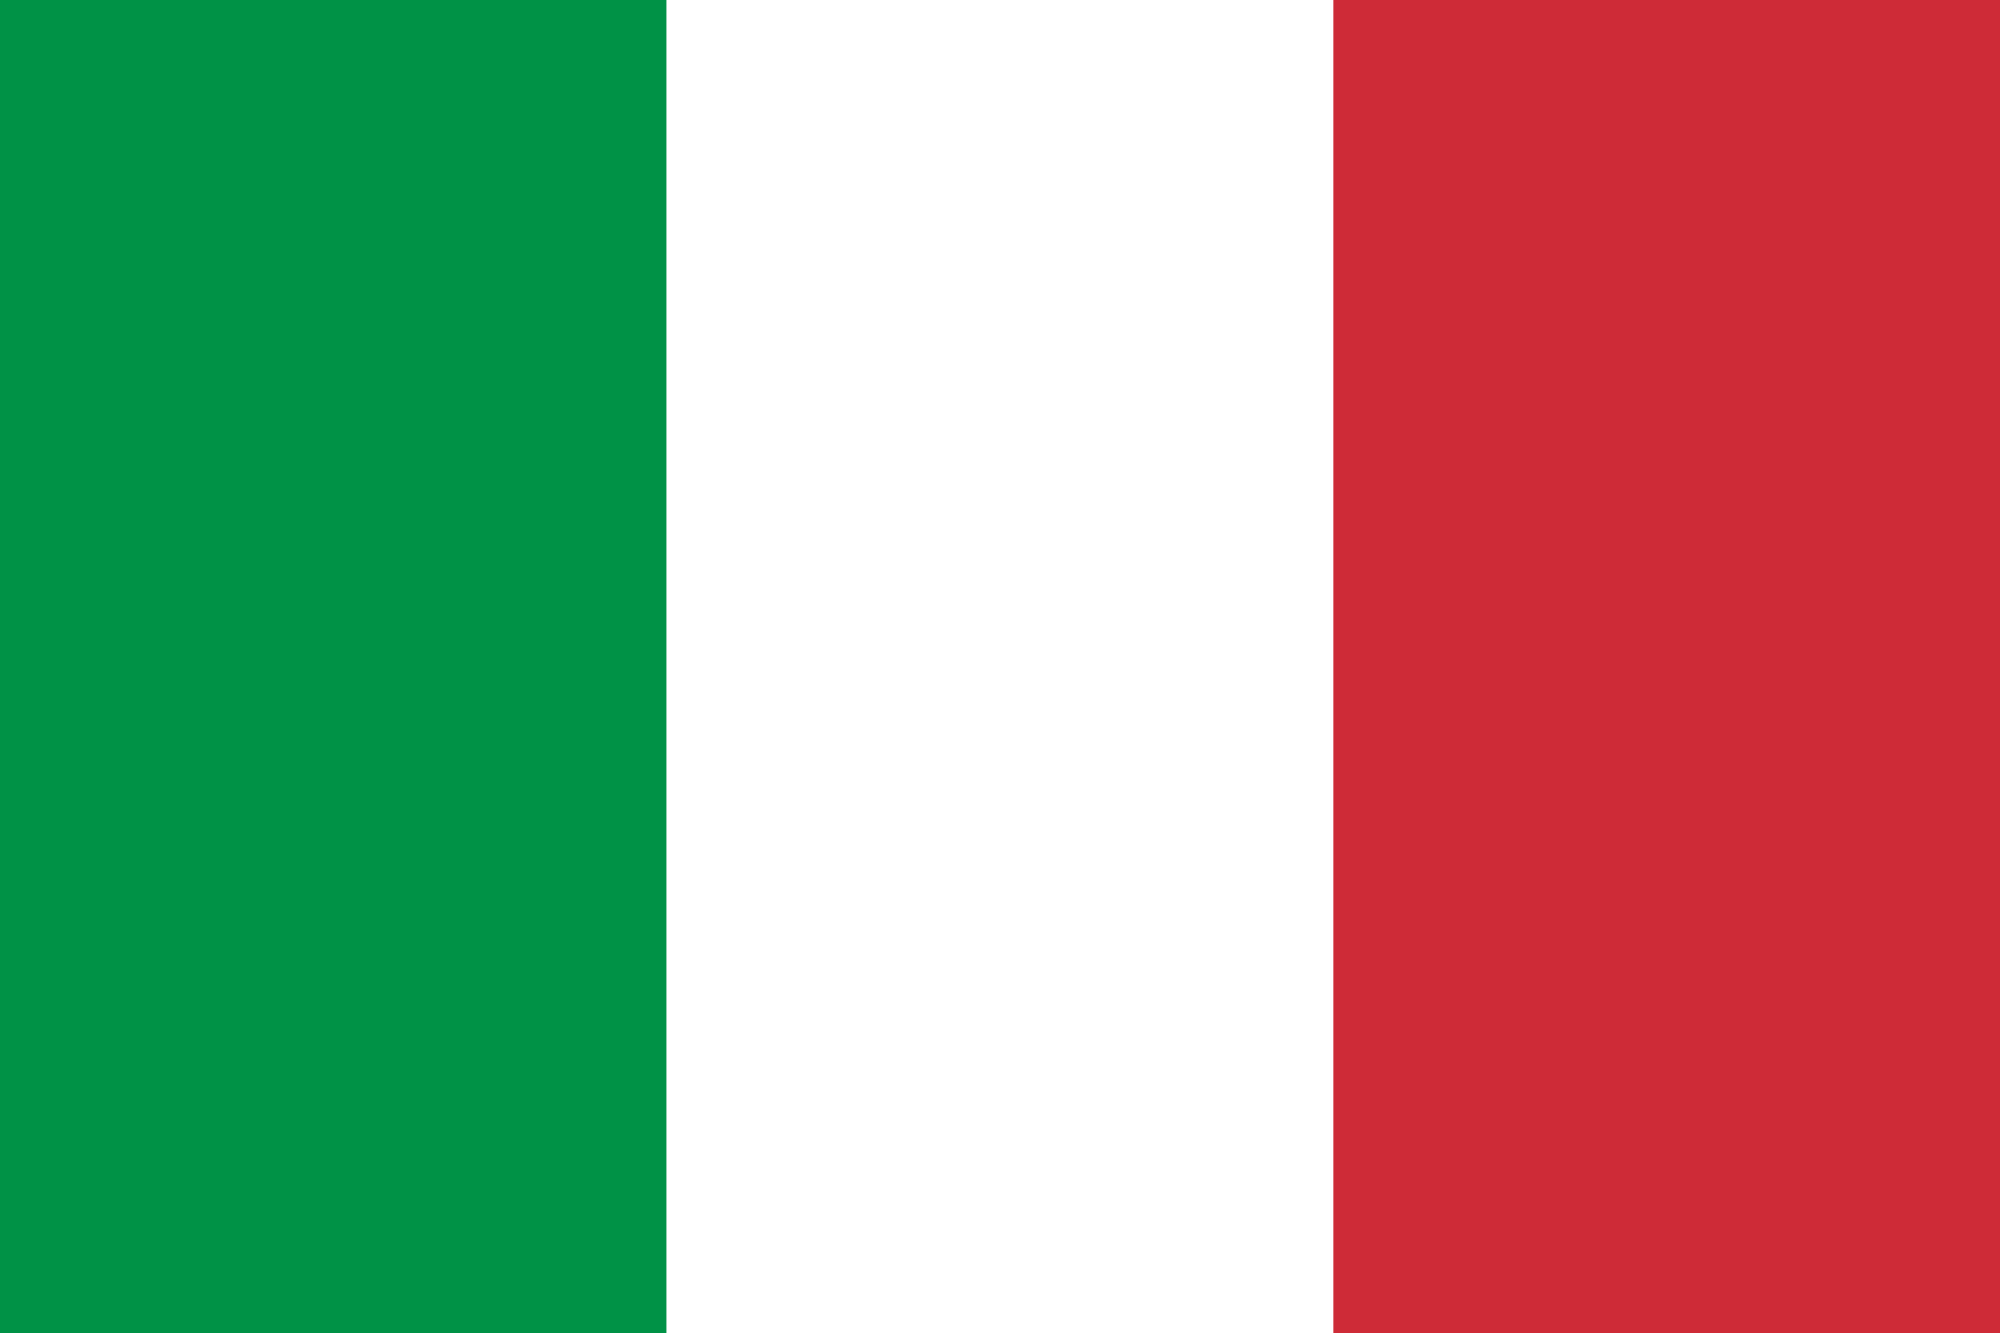 Serie A, Liga Italiana resultados, Futebol Itália 